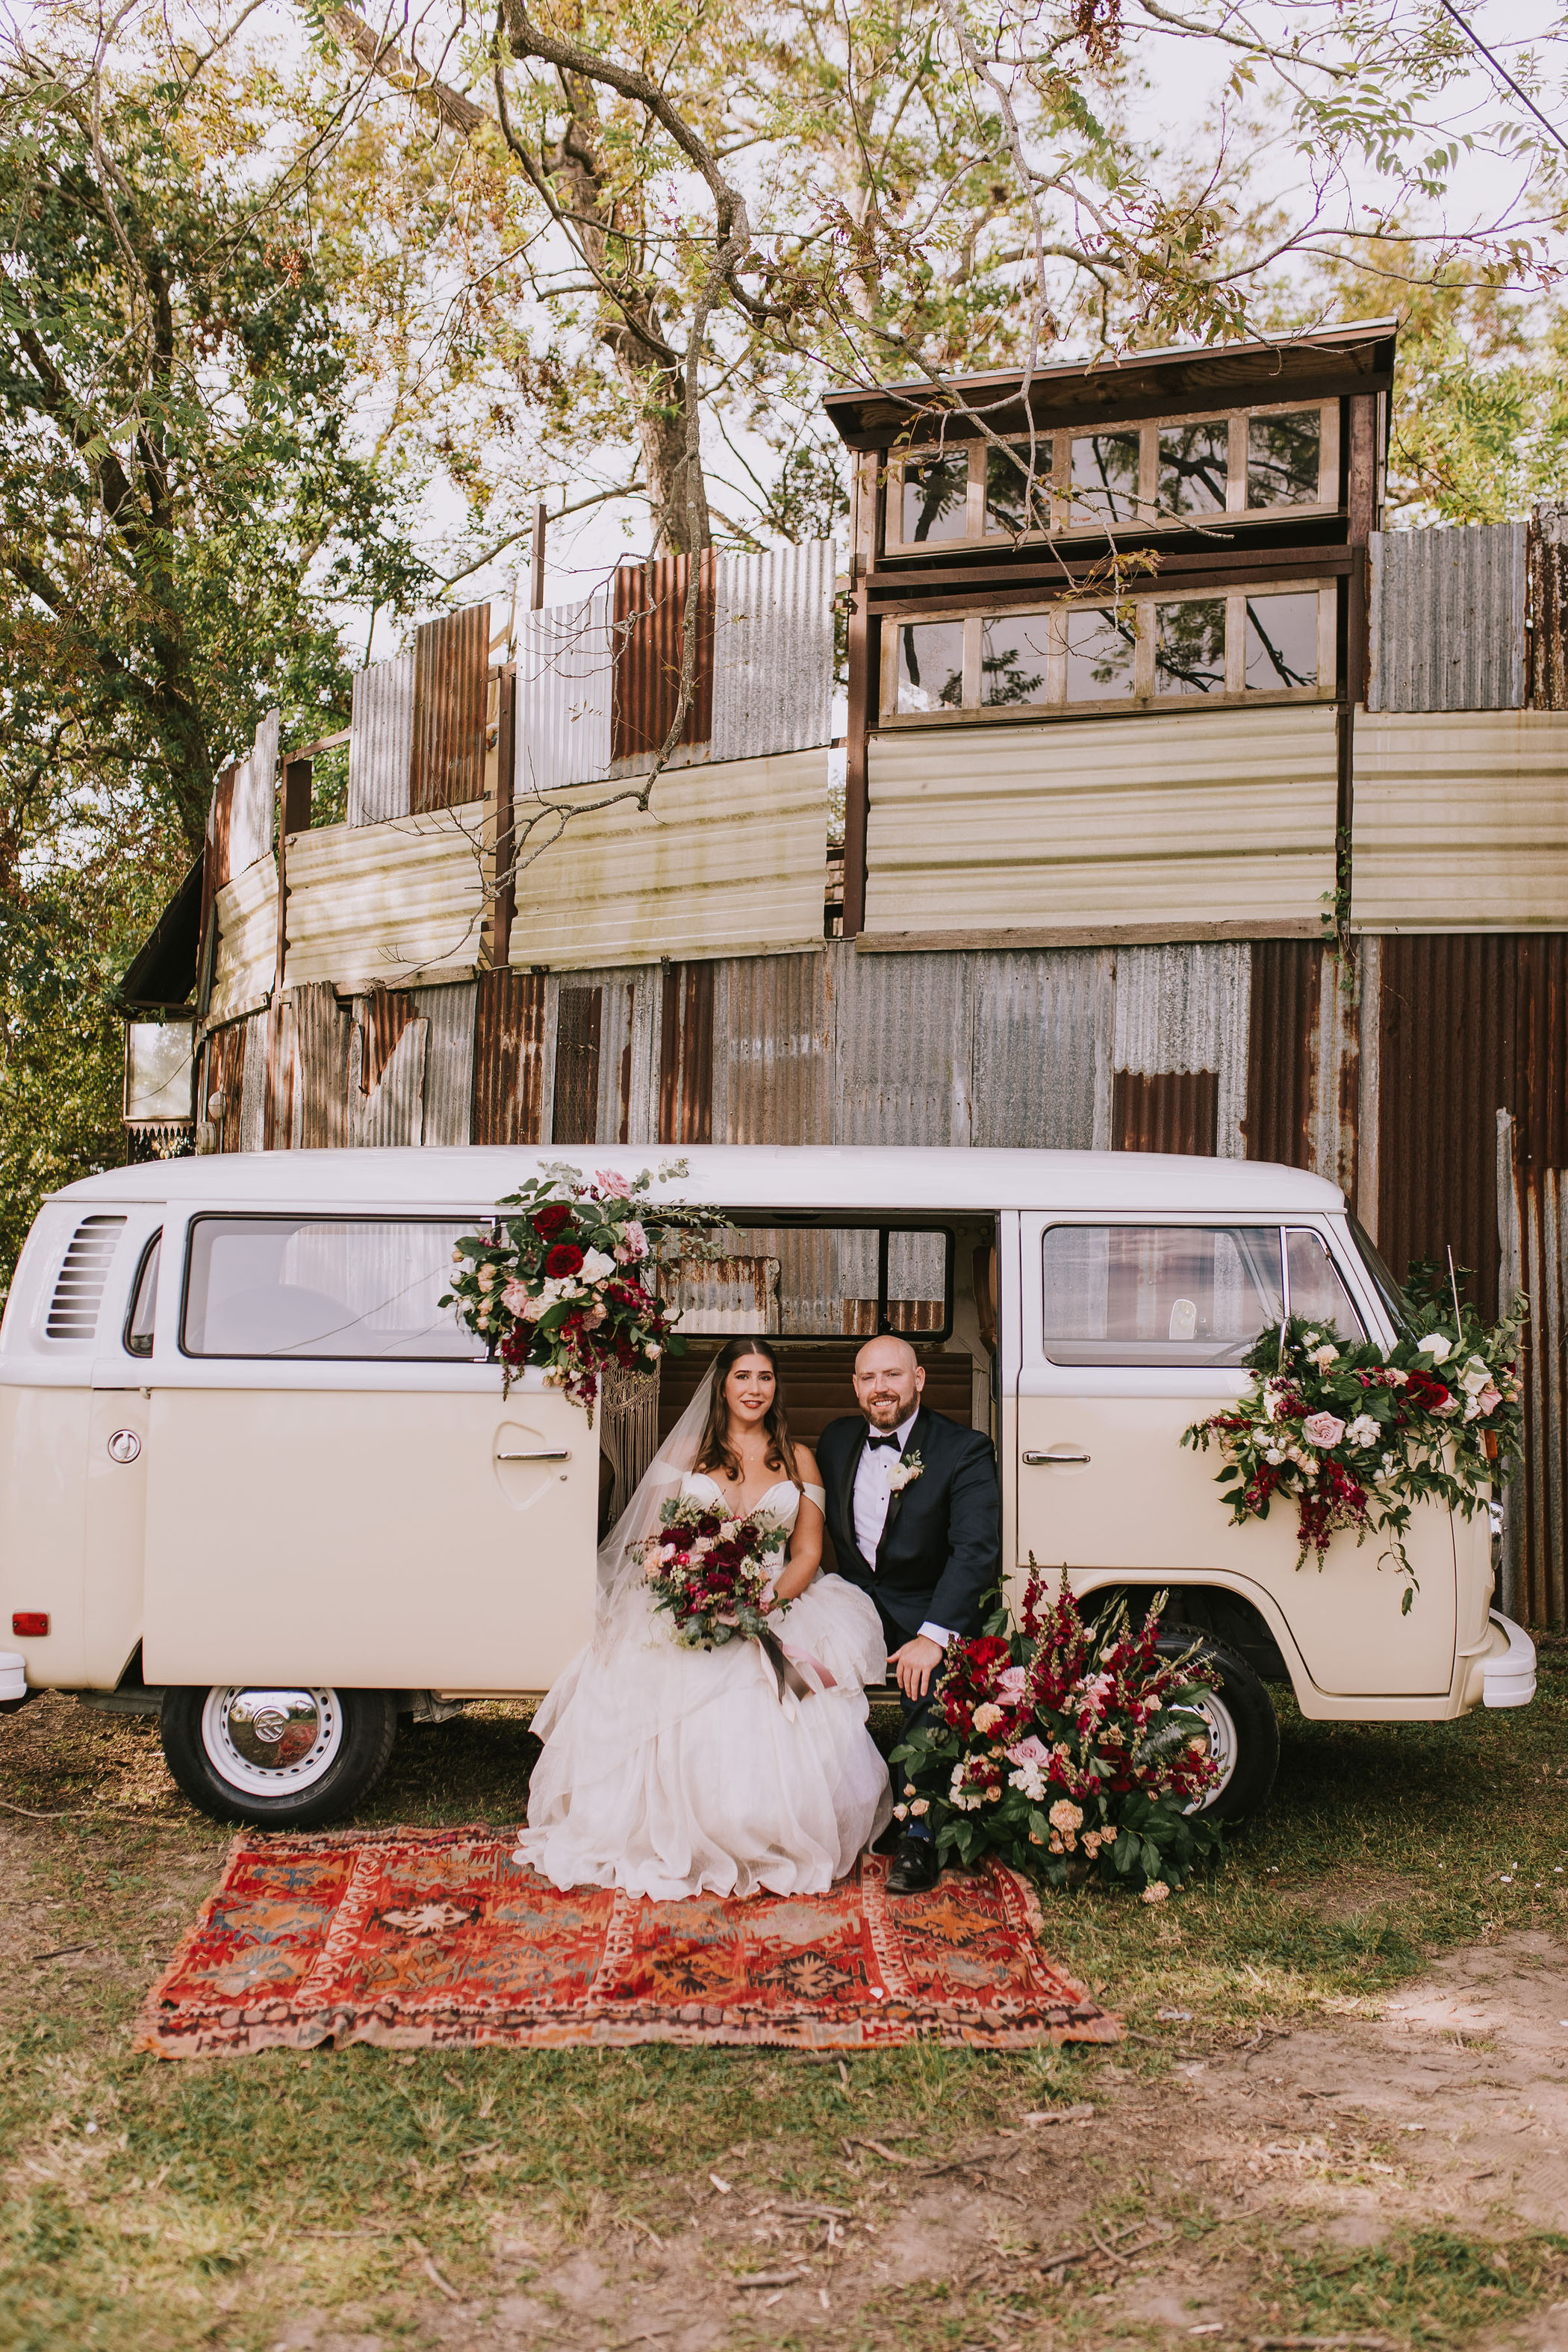 Bride and groom in vintage van